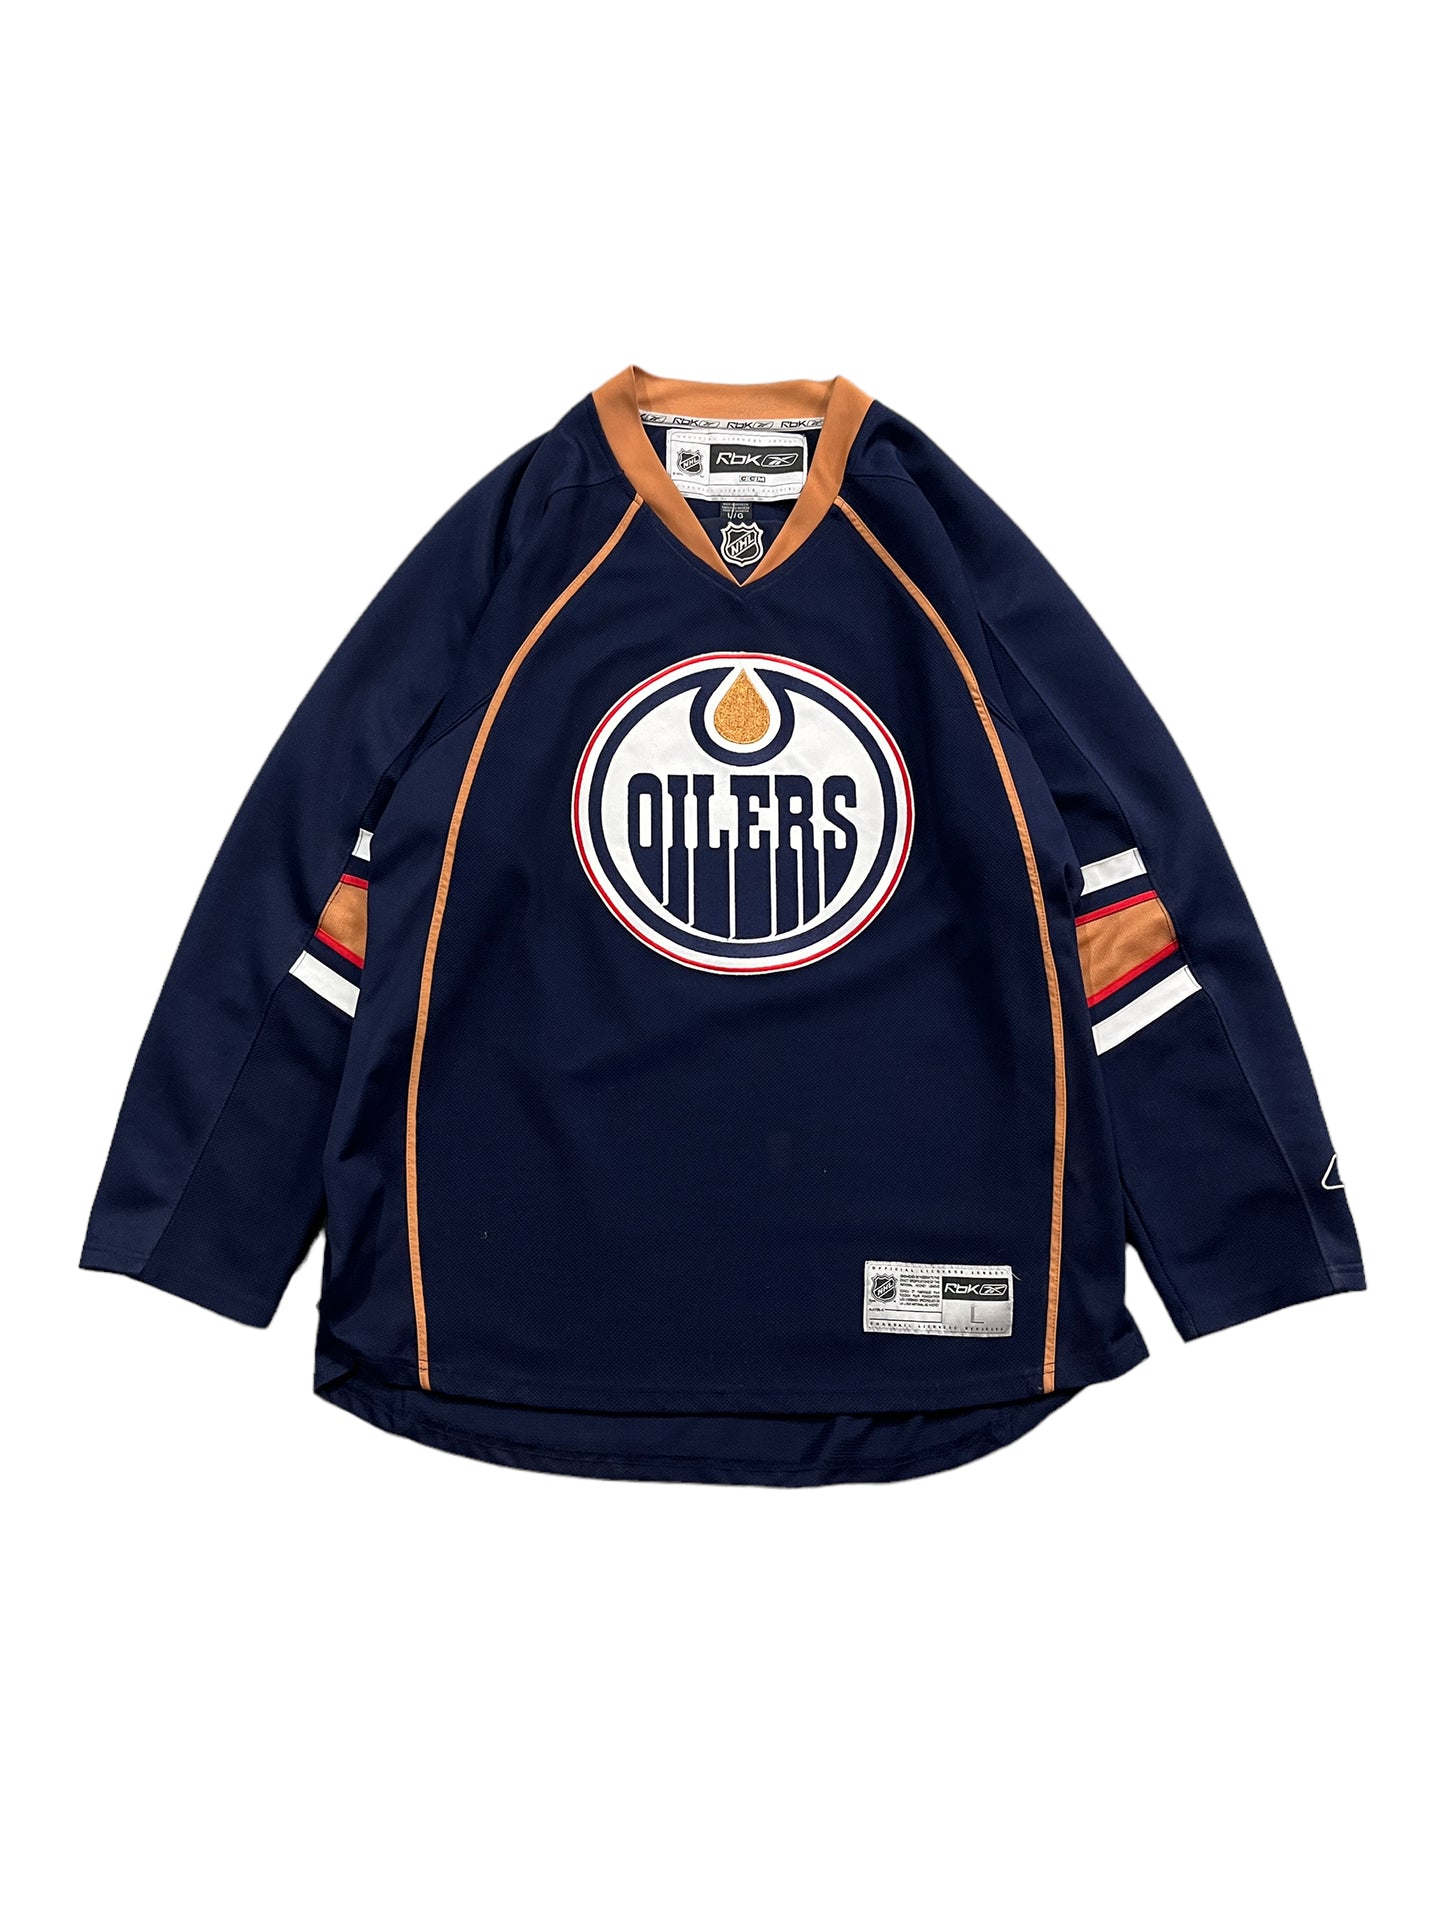 NHL CCM Reebok Edmonton Oilers Jersey